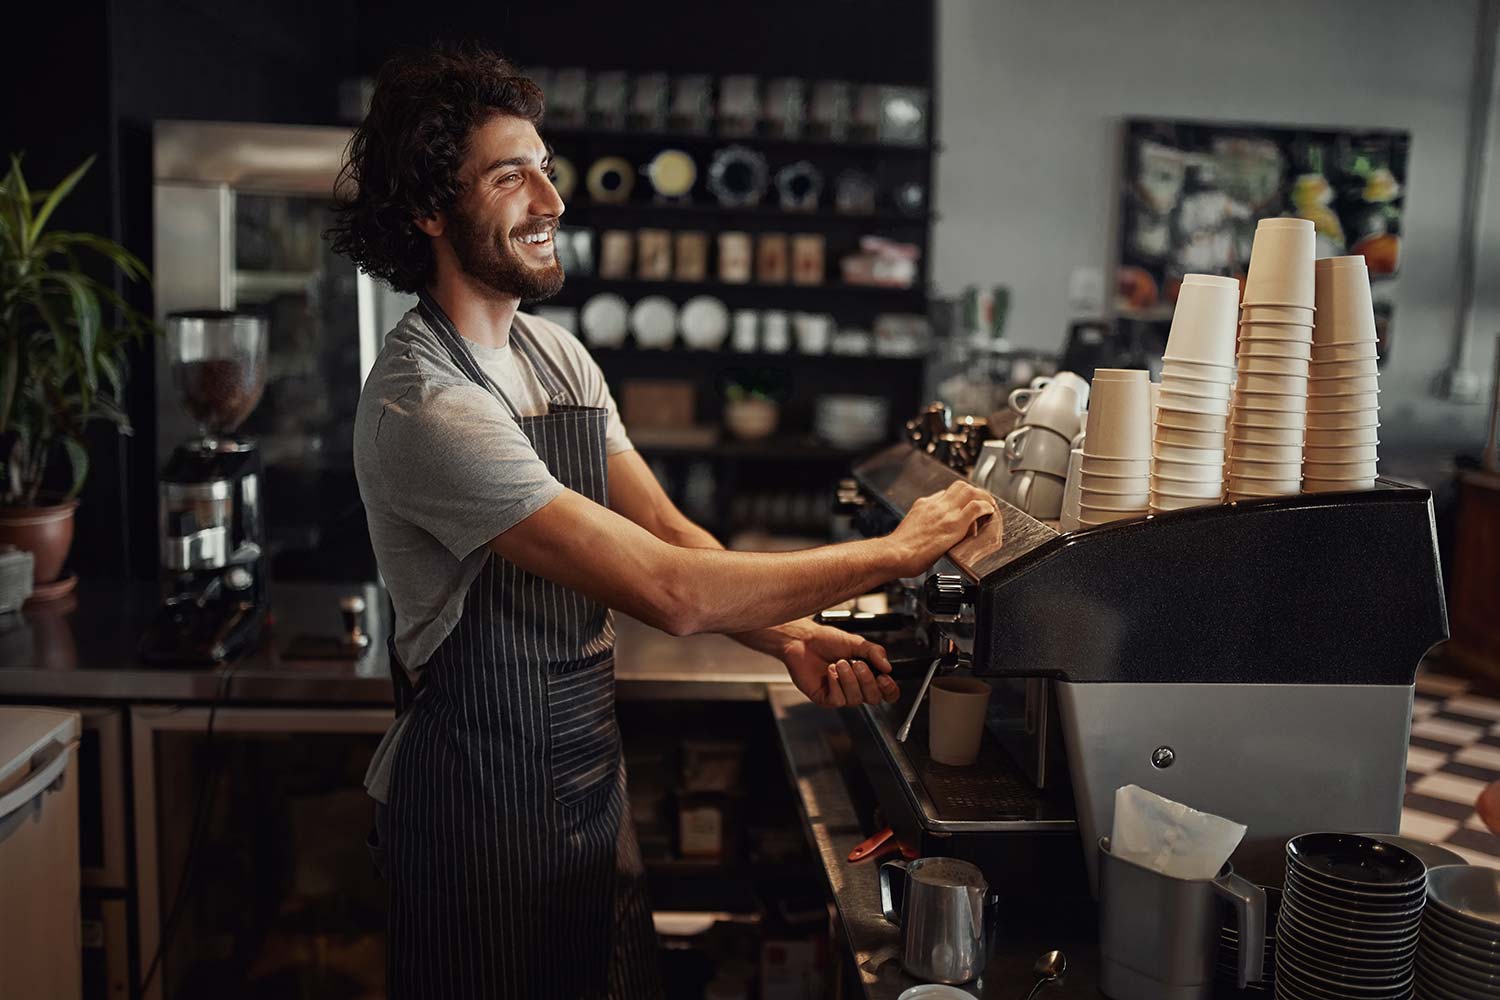 Técnico de Servimatic ofreciendo el servicio de atención técnica y reparando una máquina de café en un bar